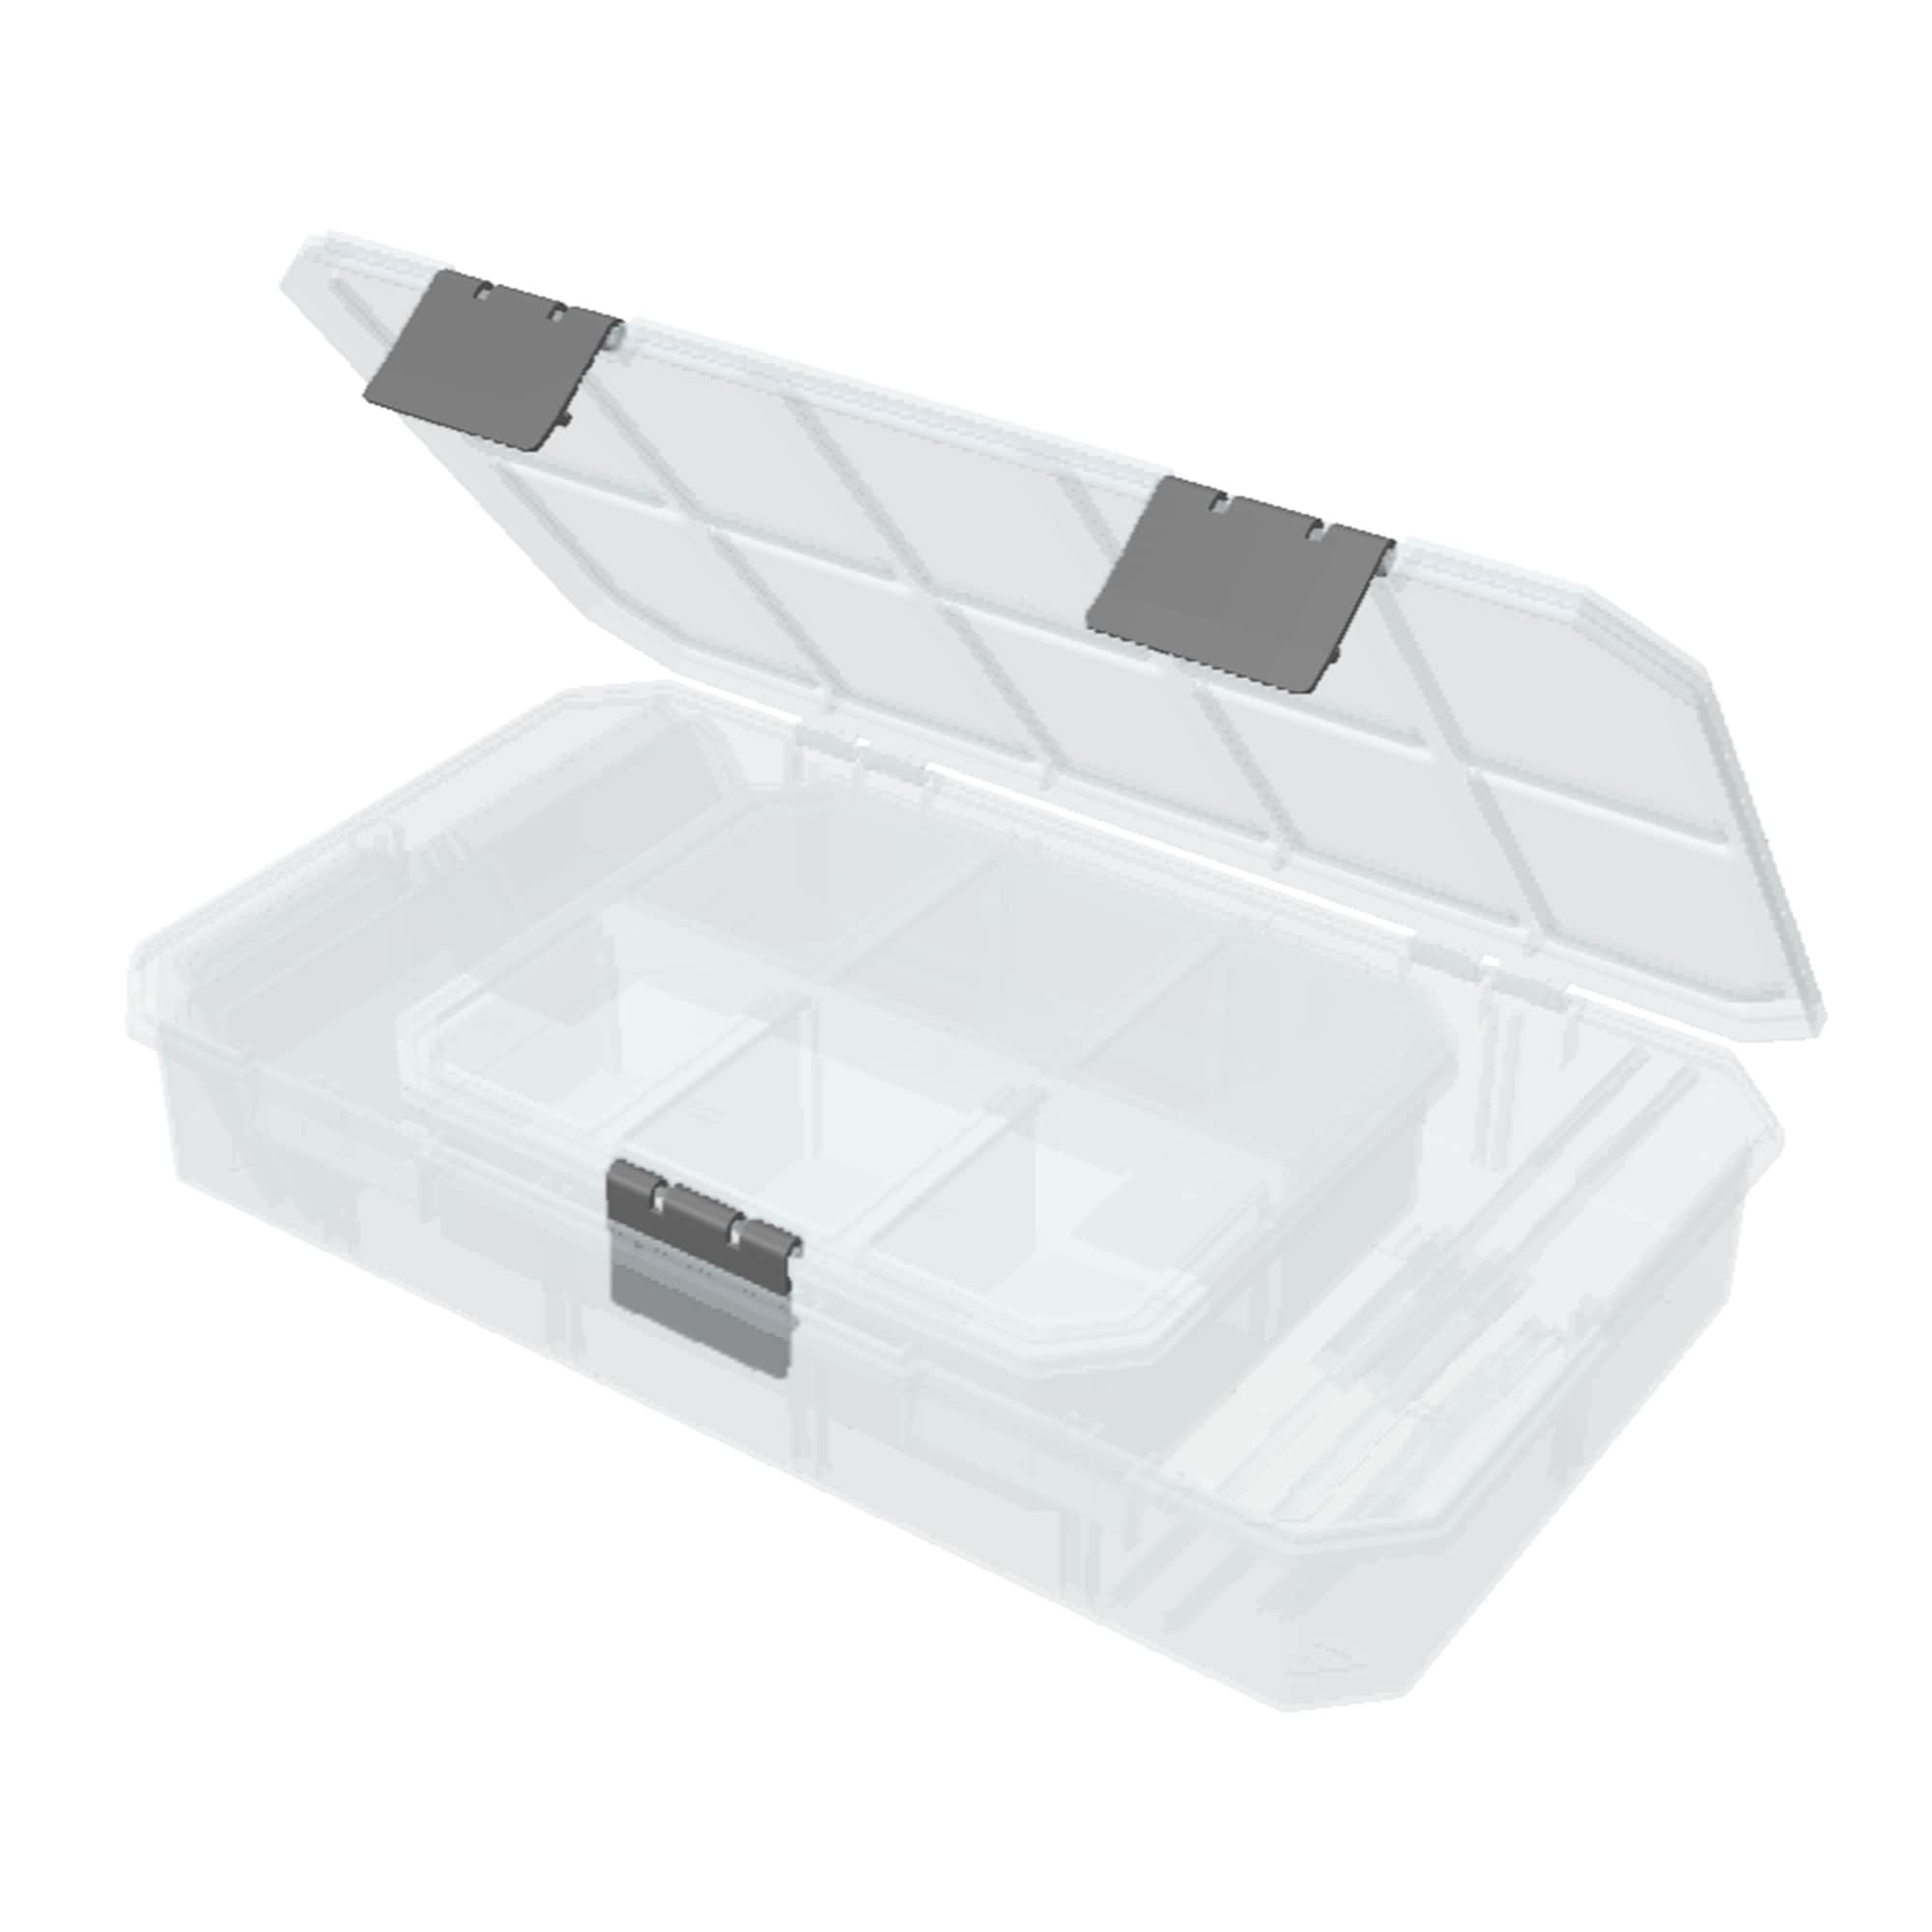 Plastic 14-Compartment Organizer Box - RioGrande